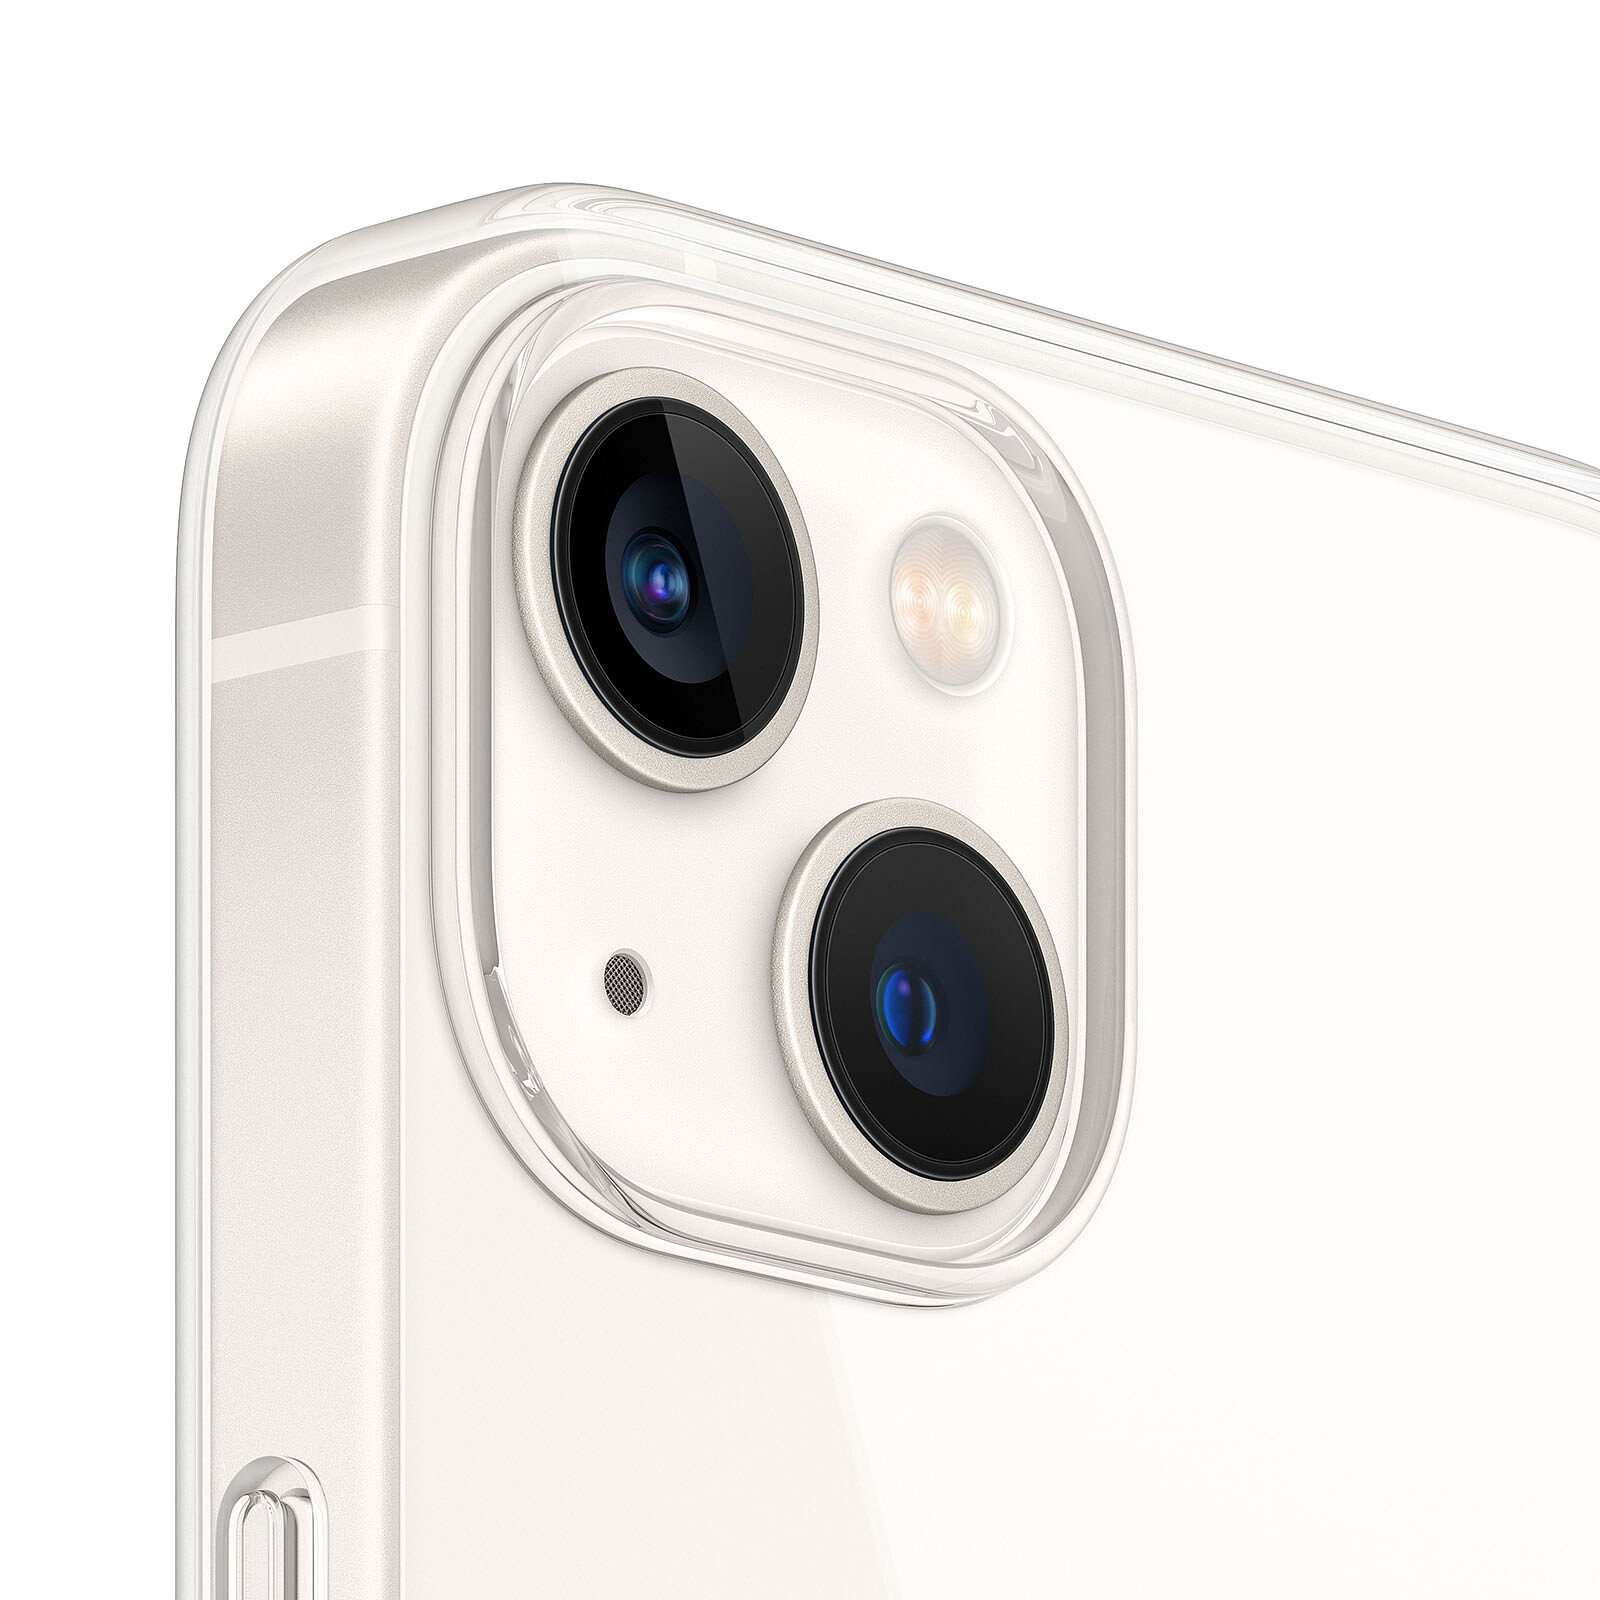 Case Apple para iPhone 13 de Silicona con MagSafe - Transparente